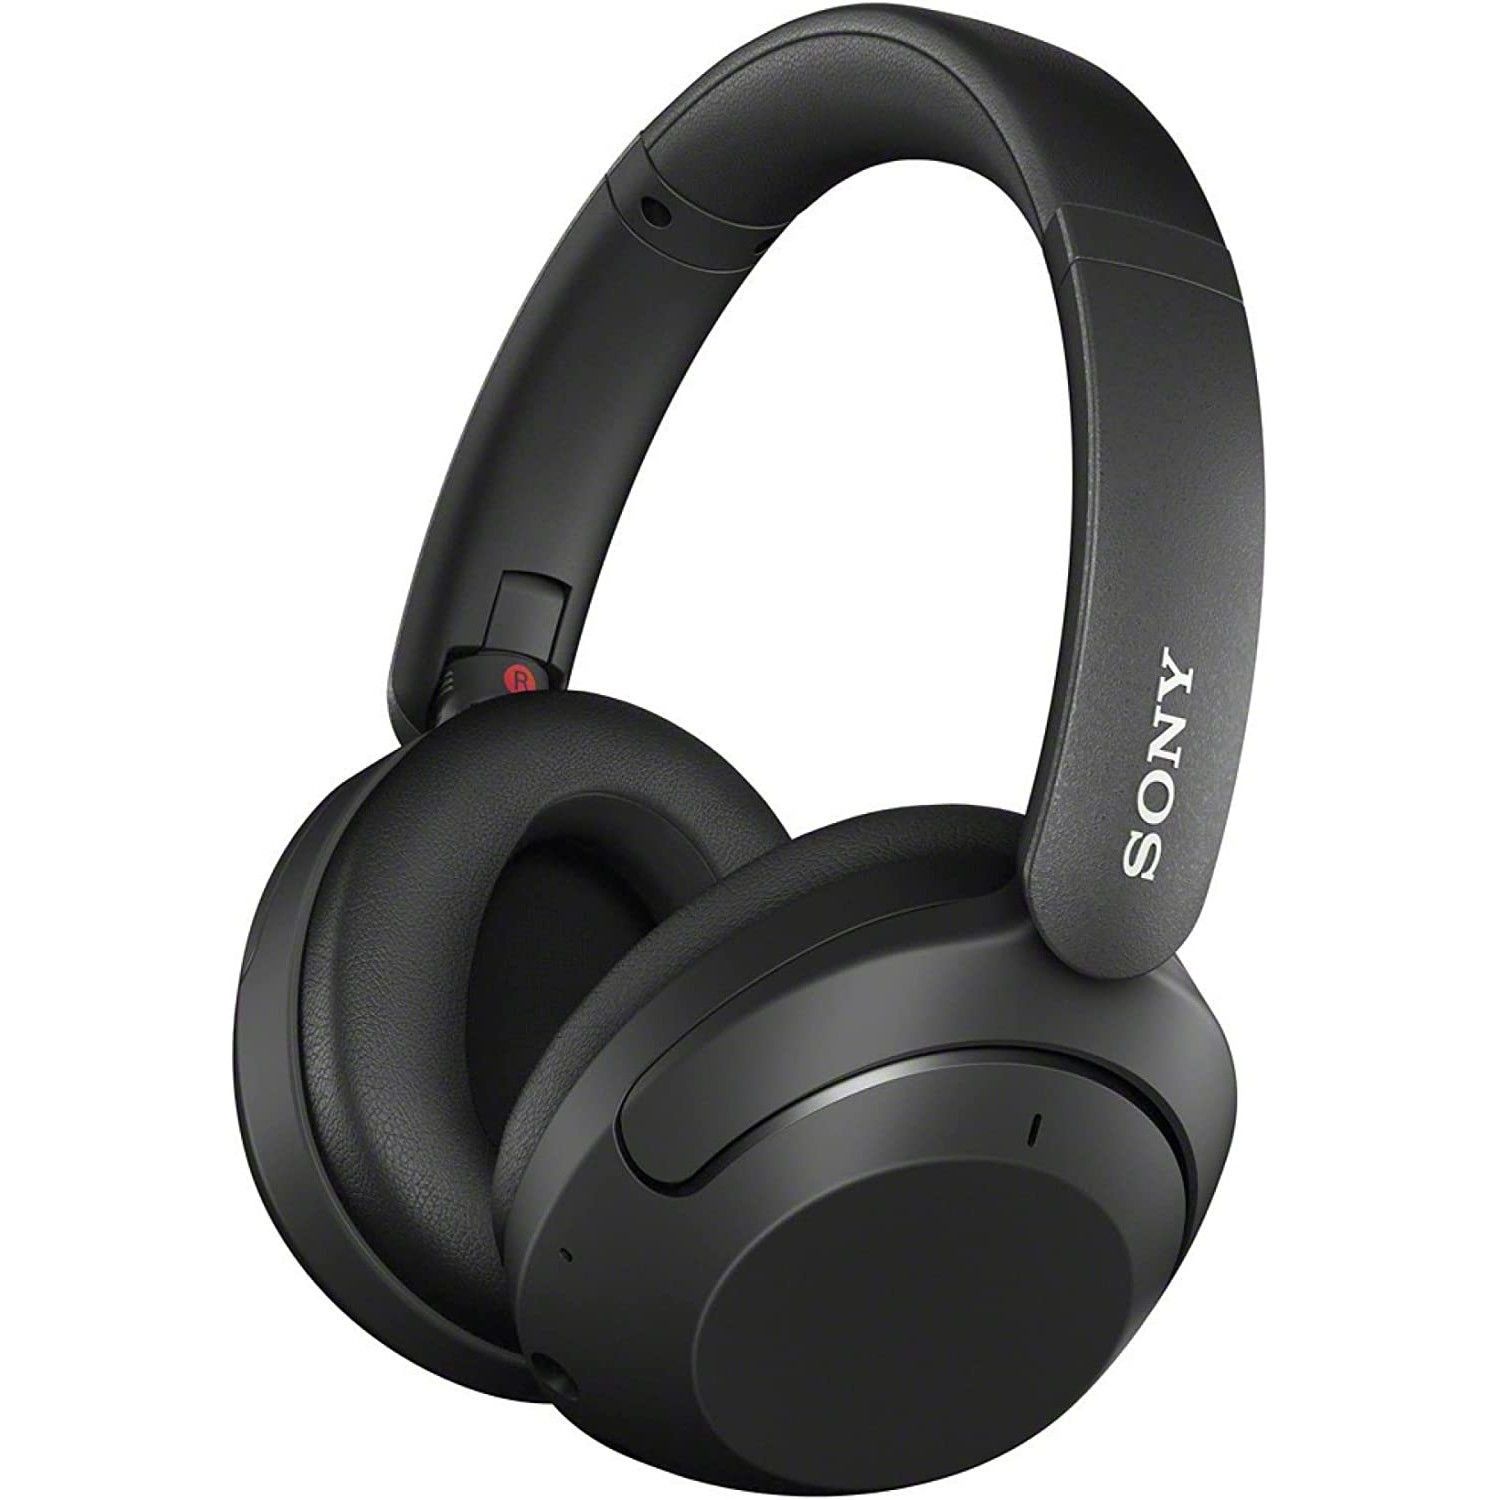 Fones de ouvido intra-auriculares sem fio pretos Sony WH-XB910N posicionados em ângulo sobre um fundo branco